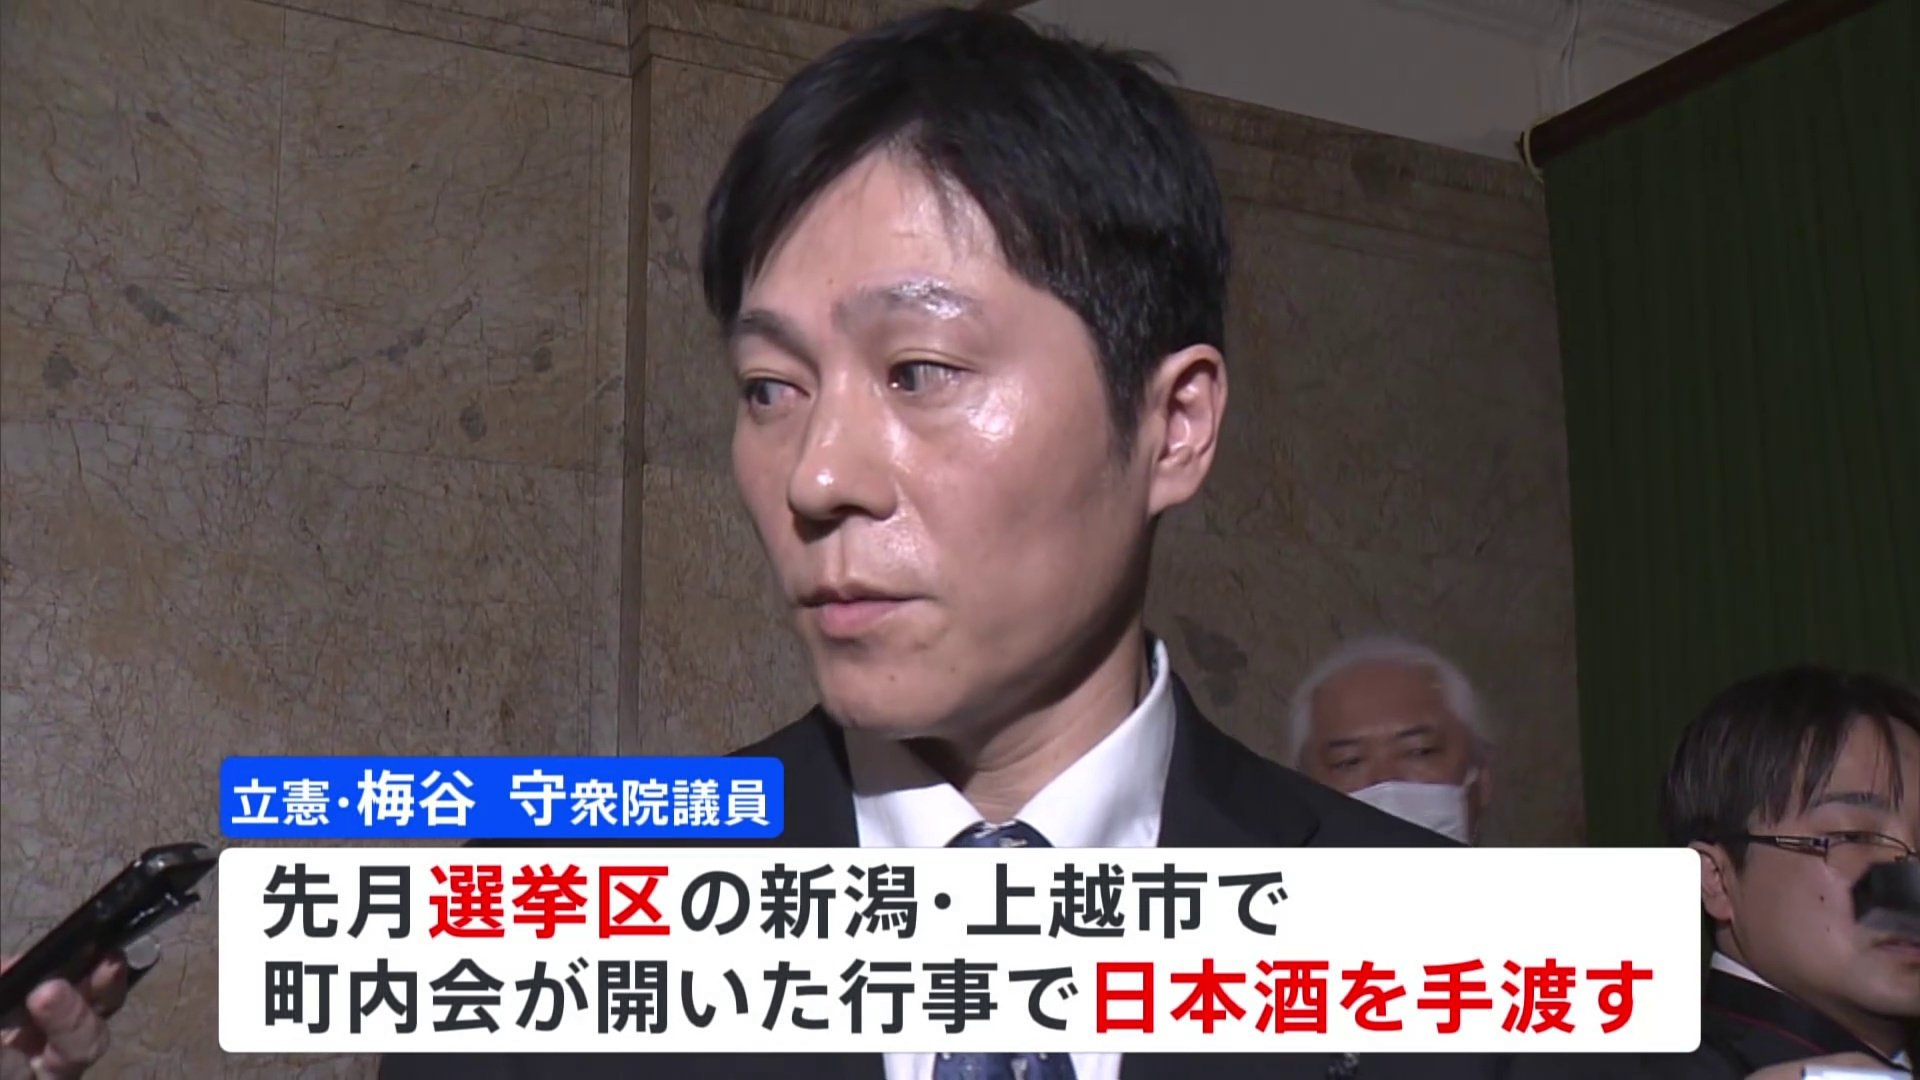 立憲・梅谷議員 選挙区で日本酒配り公選法違反の疑い「軽率だった」